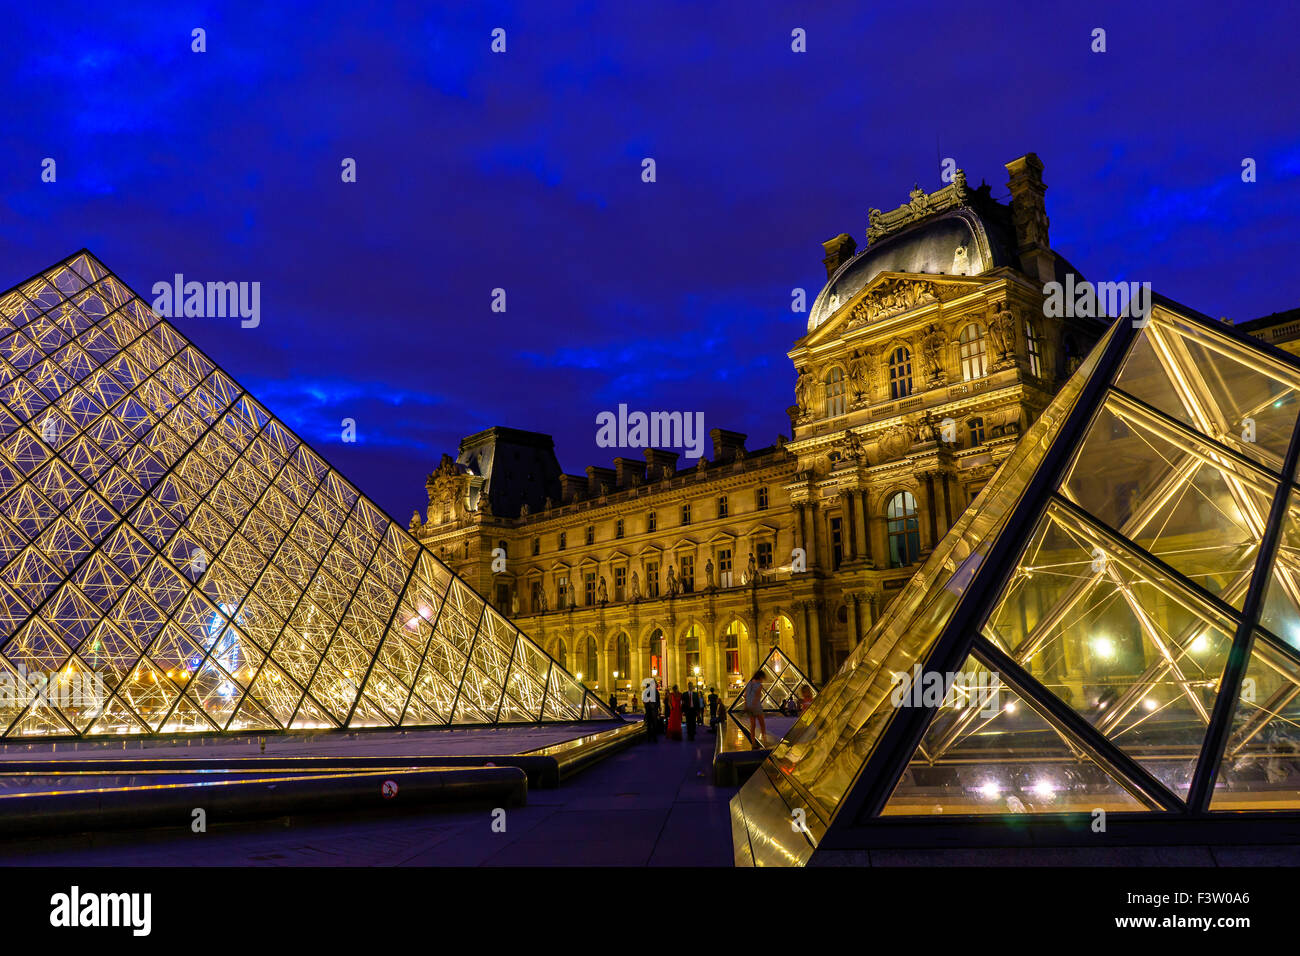 Le crépuscule tombe sur deux pyramides au musée du Louvre. Paris, France. Août, 2015. Banque D'Images